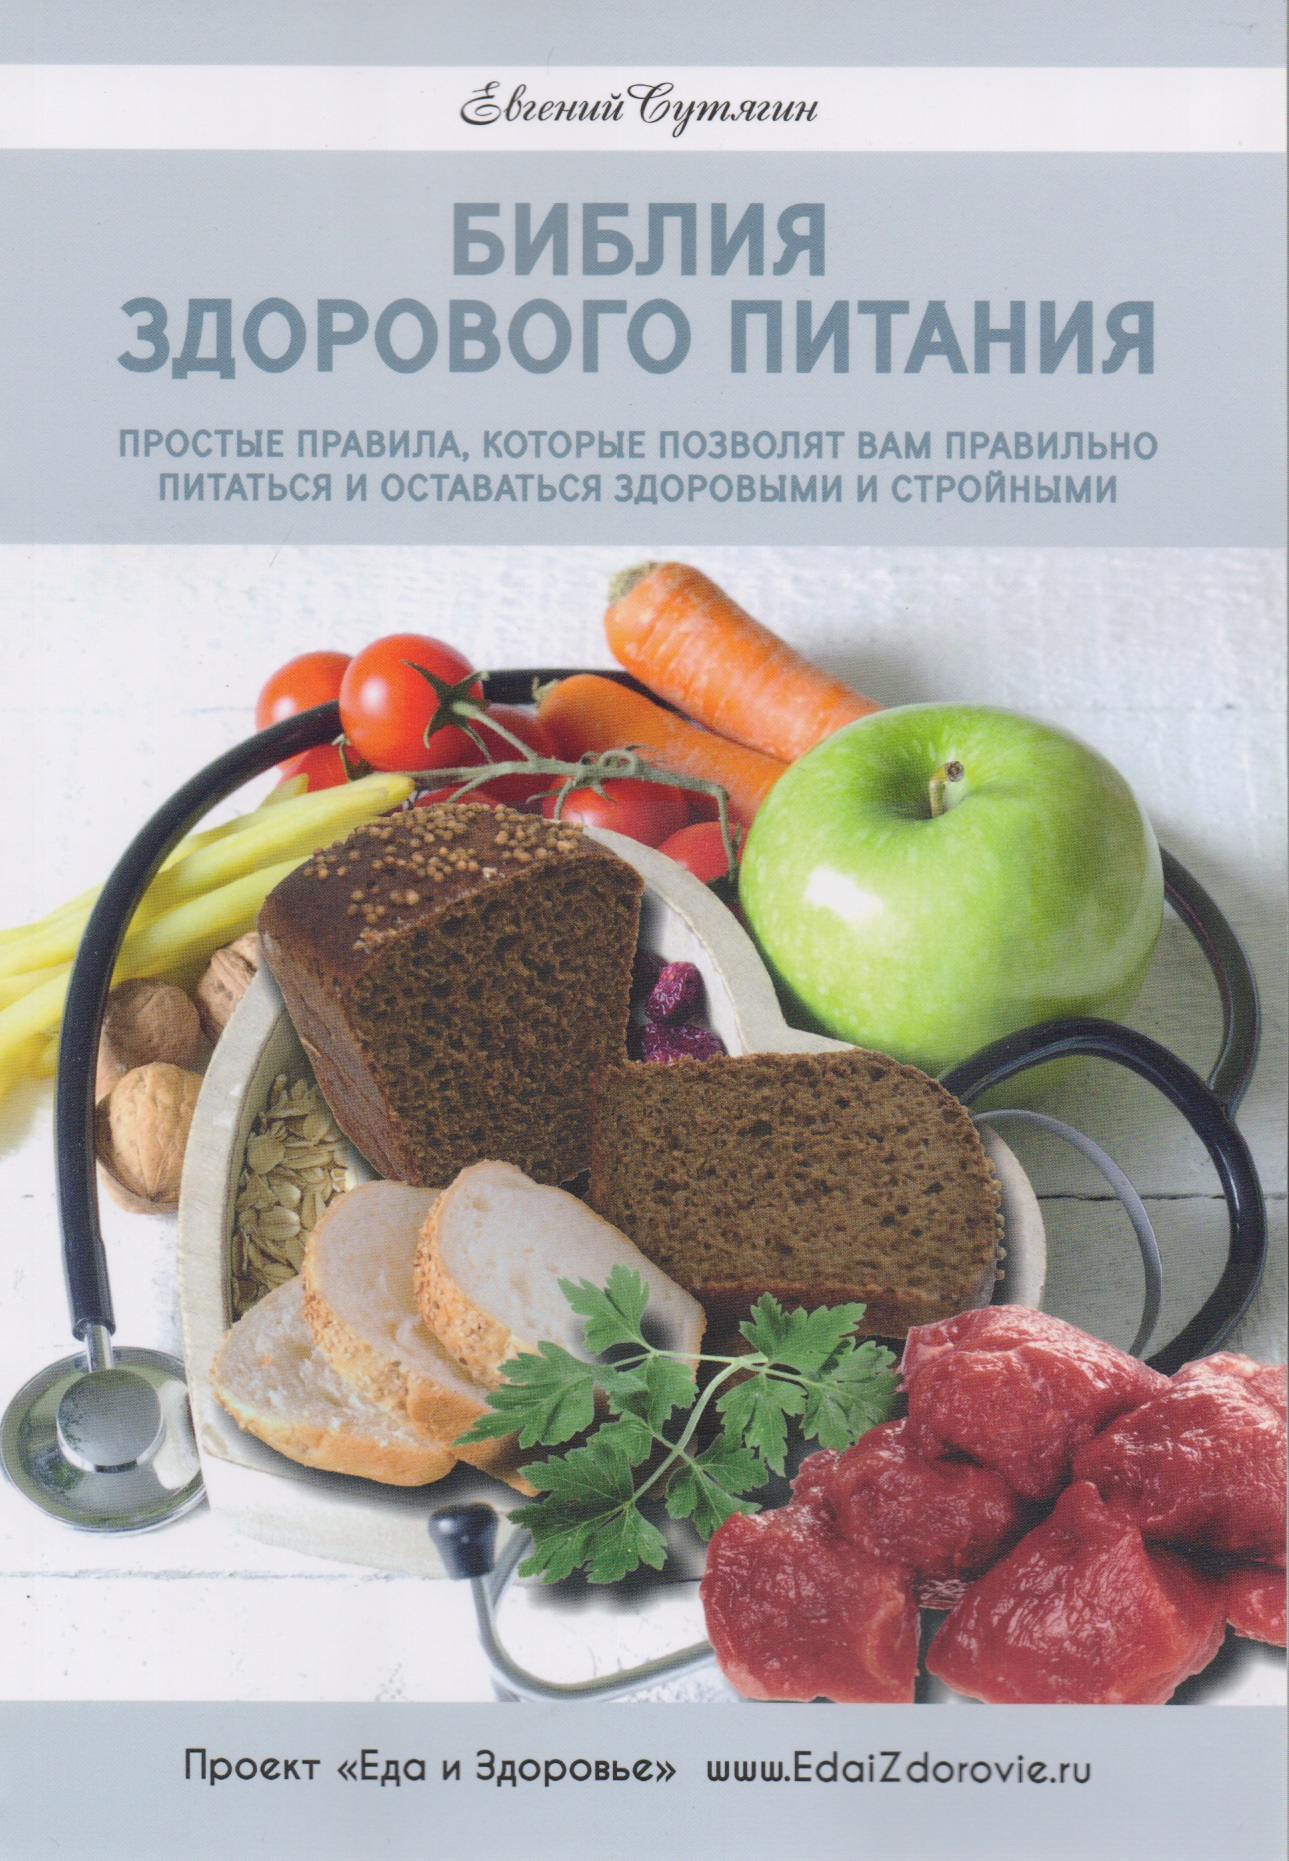 Сутягин Евгений Анатольевич Библия здорового питания сутягин е библия здорового питания